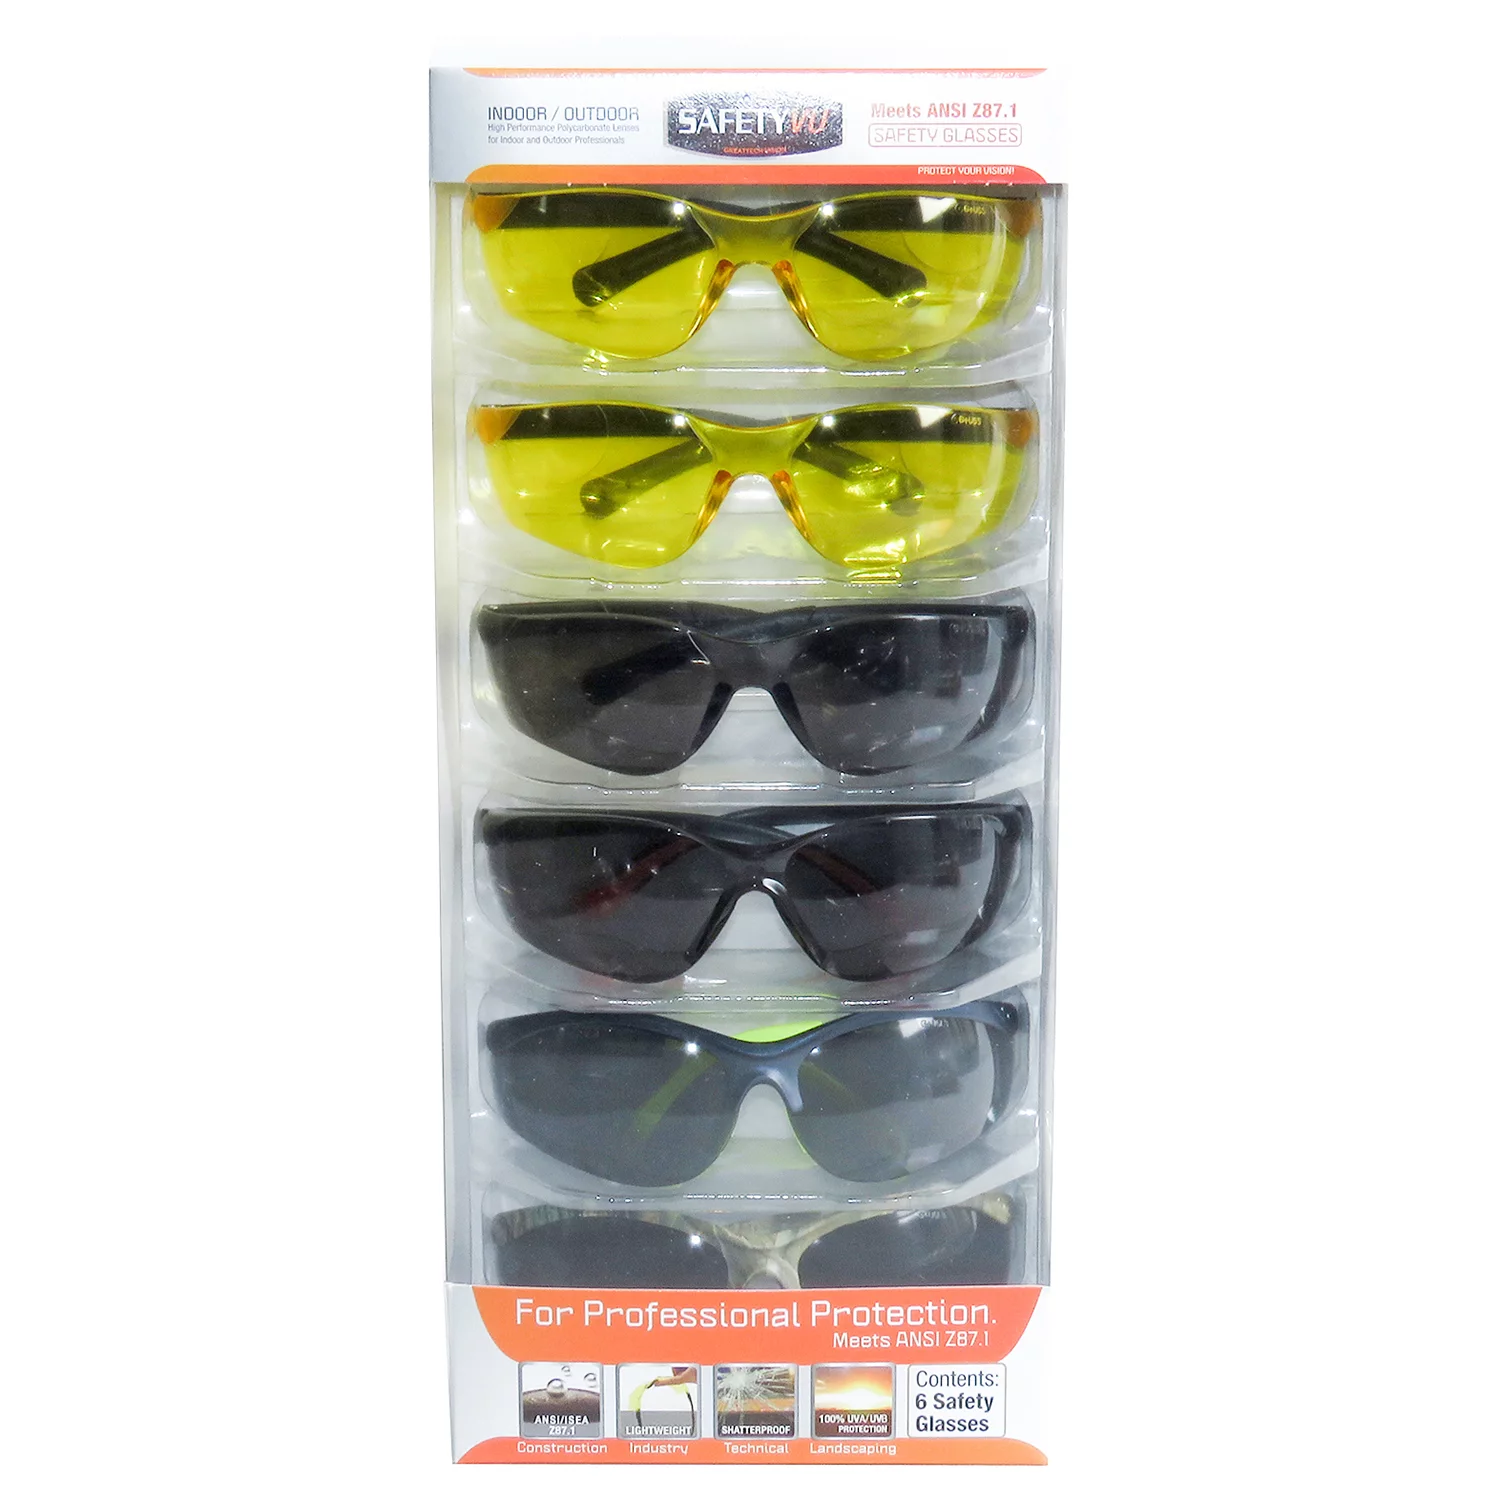 SafetyVU Safety Glasses, 4 Smoke and 2 Yellow, (6 pk.)  